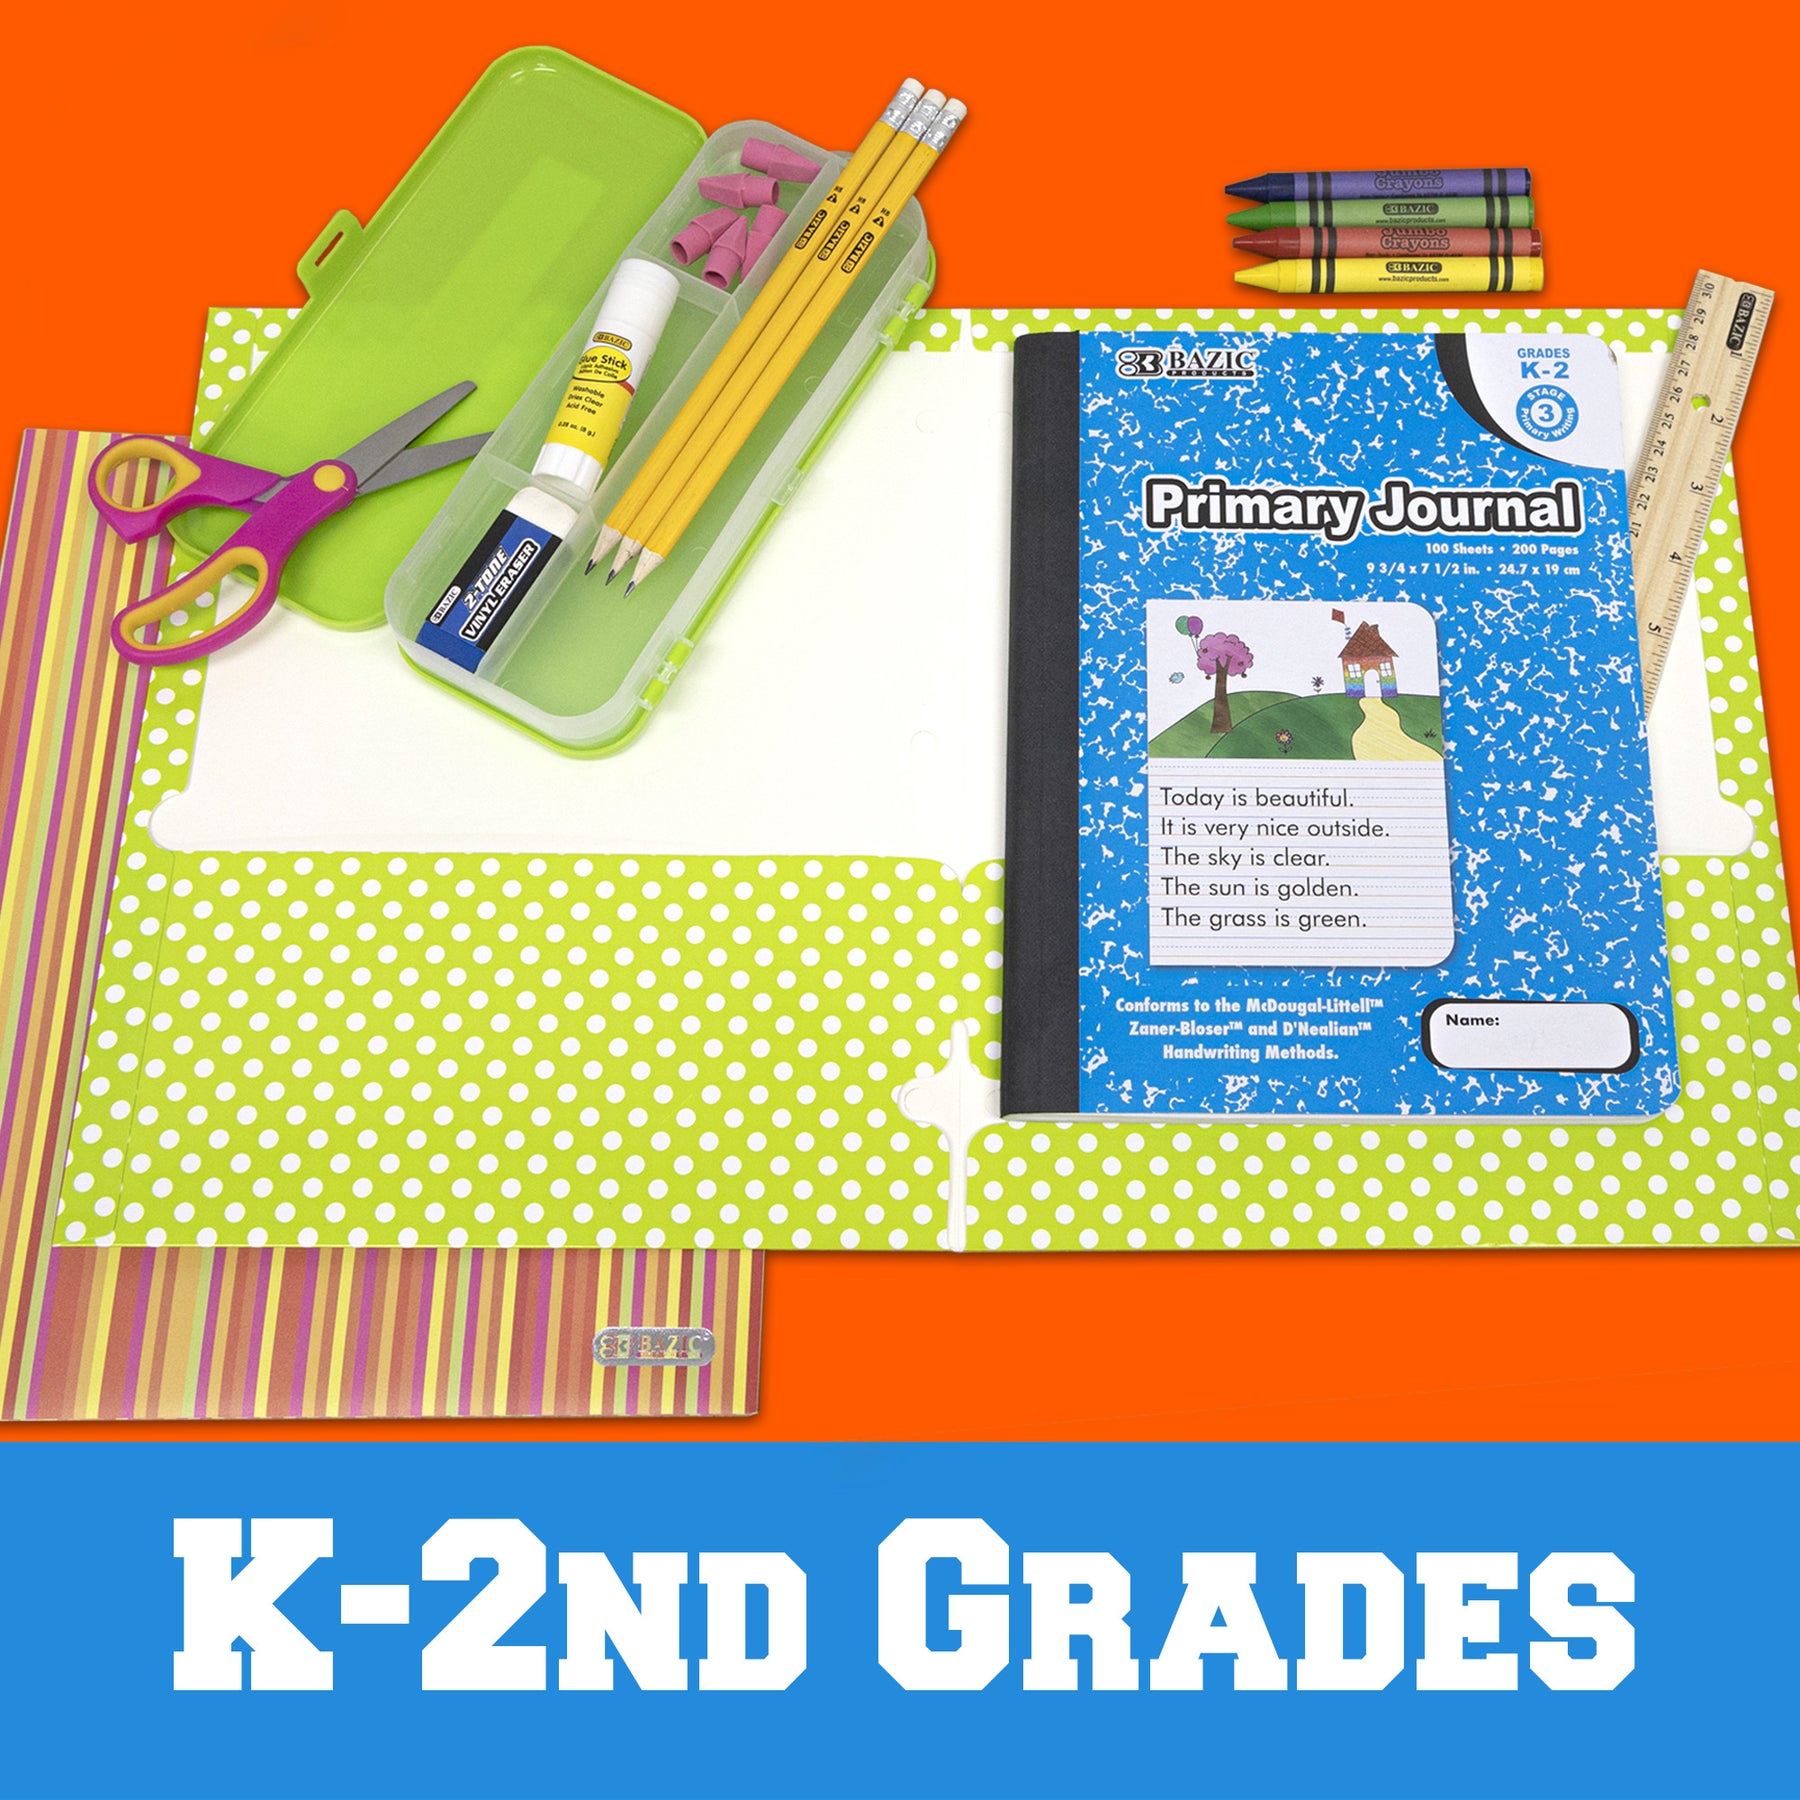 Kindergarten - 2nd Grade